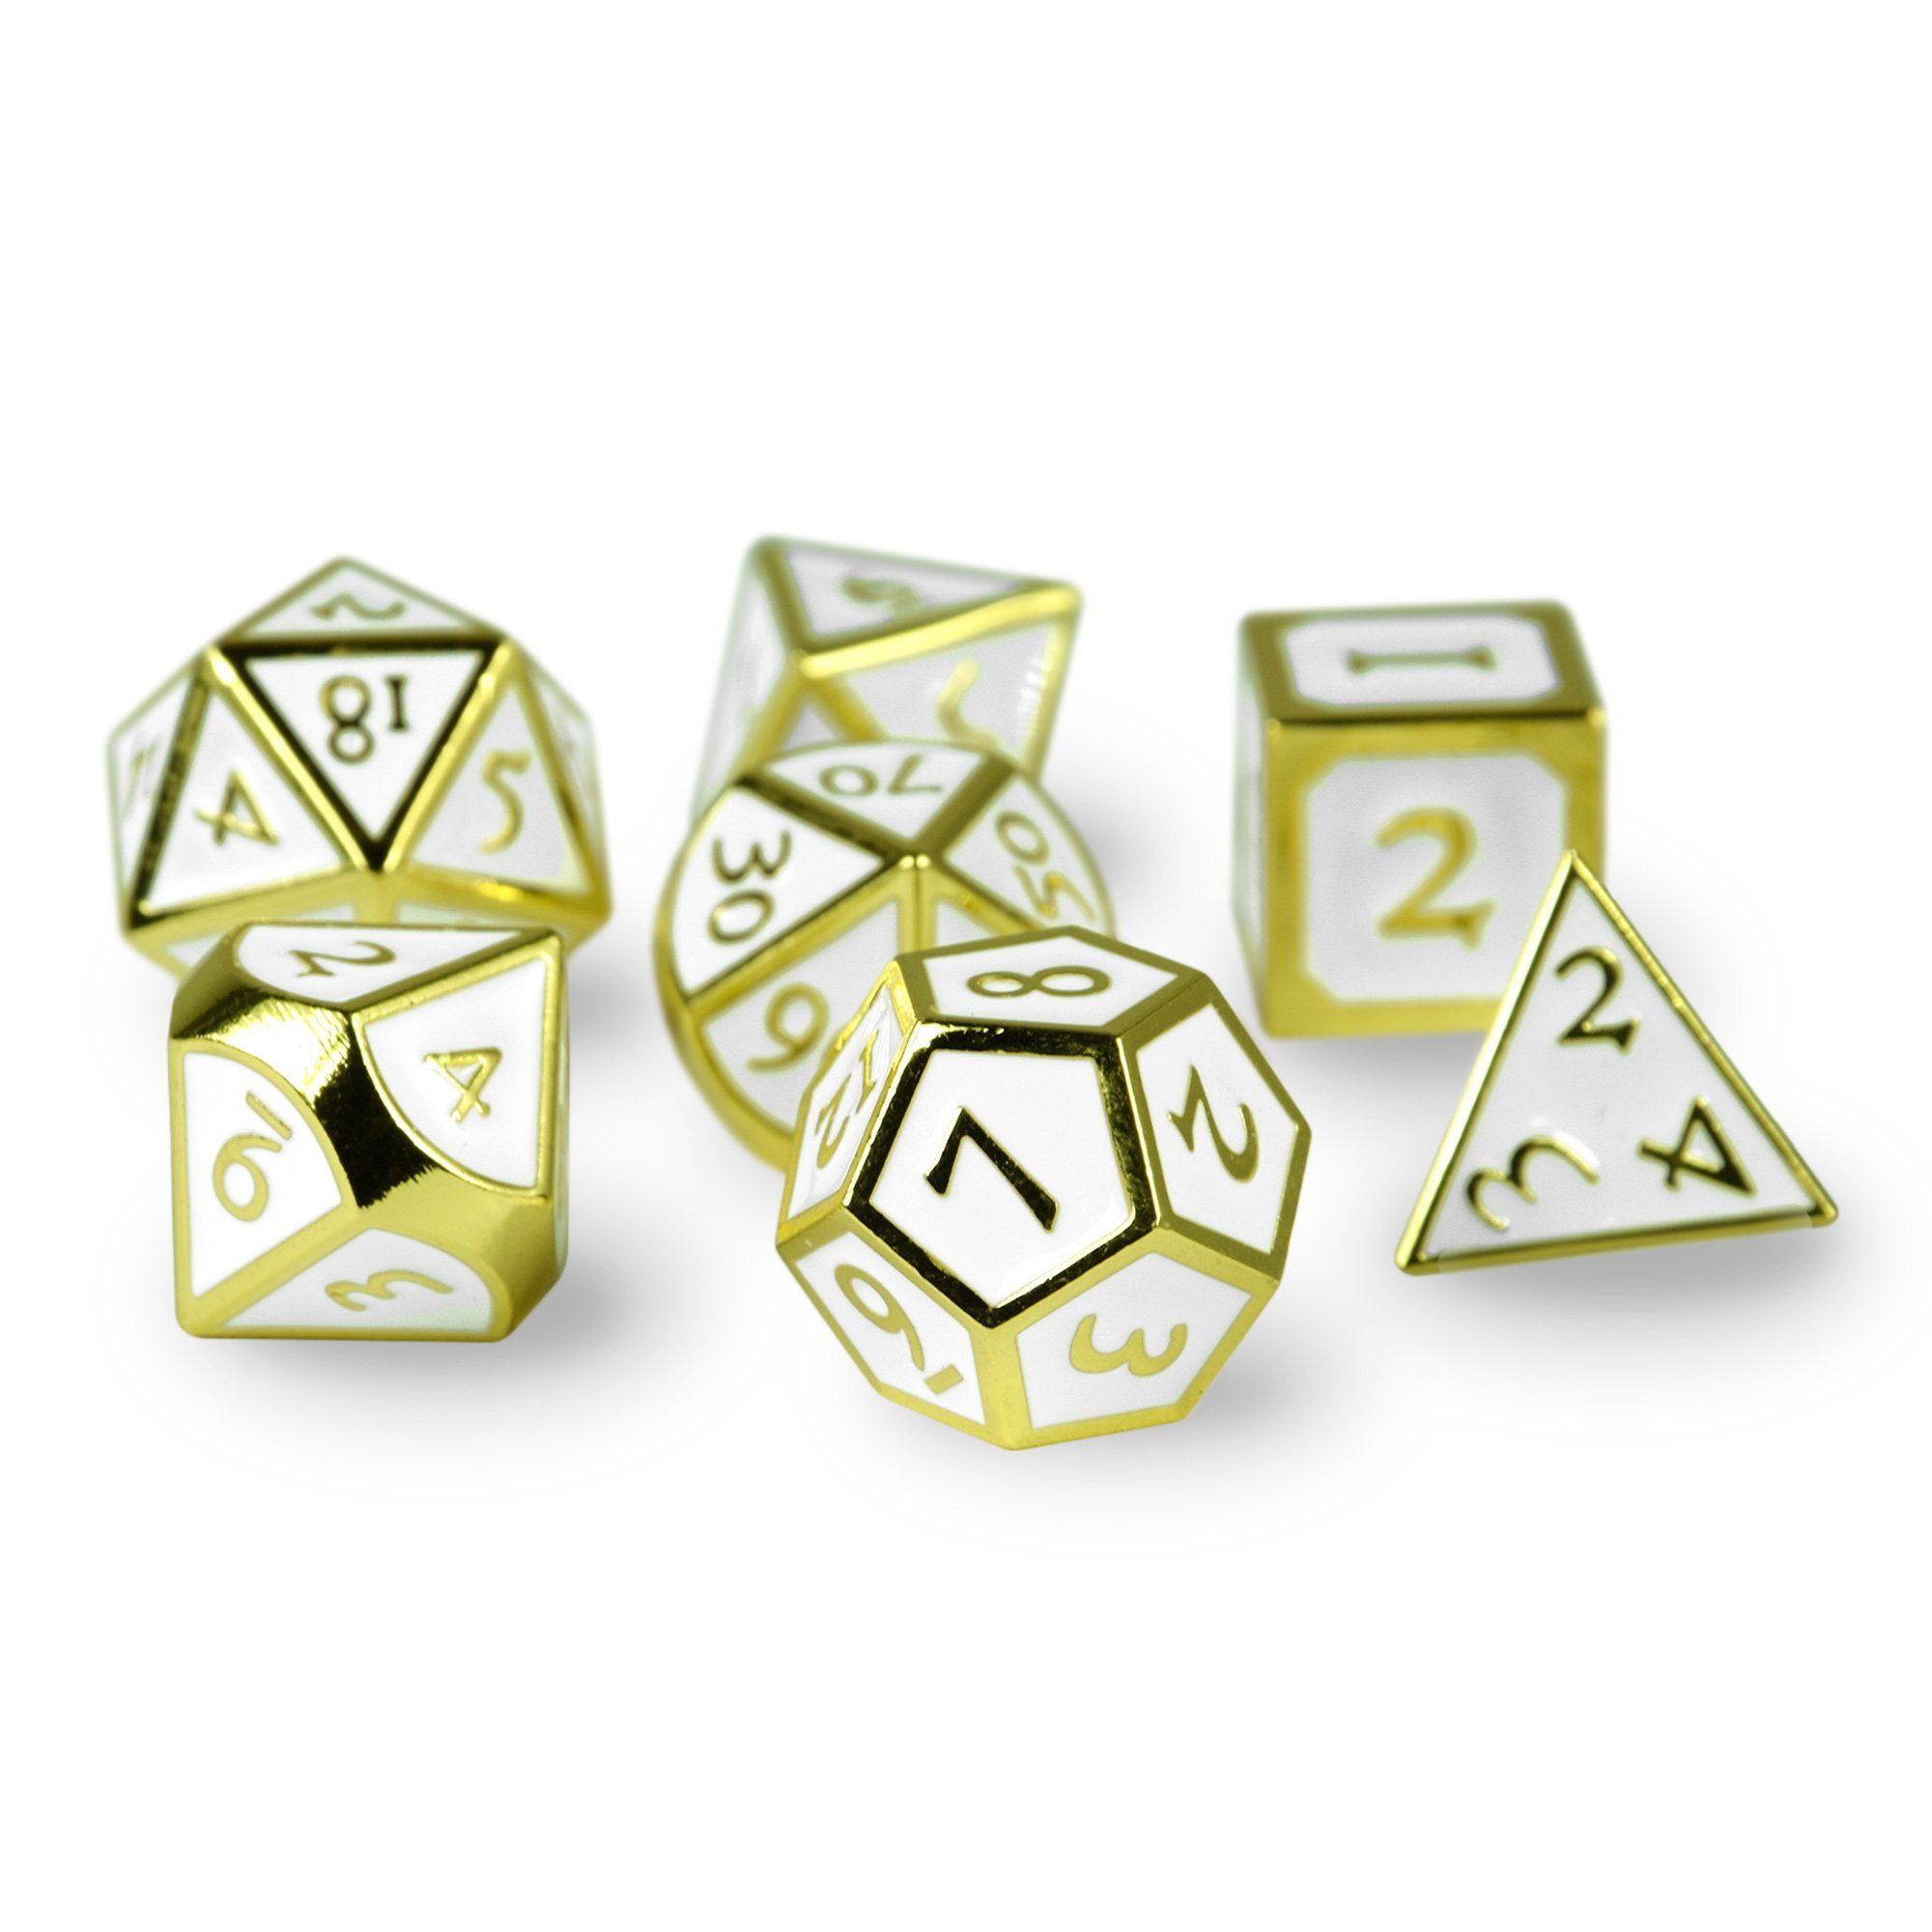 SHIBBY Spielesammlung, 7 polyedrische Metall-DND-Würfel inkl. Aufbewahrungsbox Optik, Gold/Weiß in Steampunk